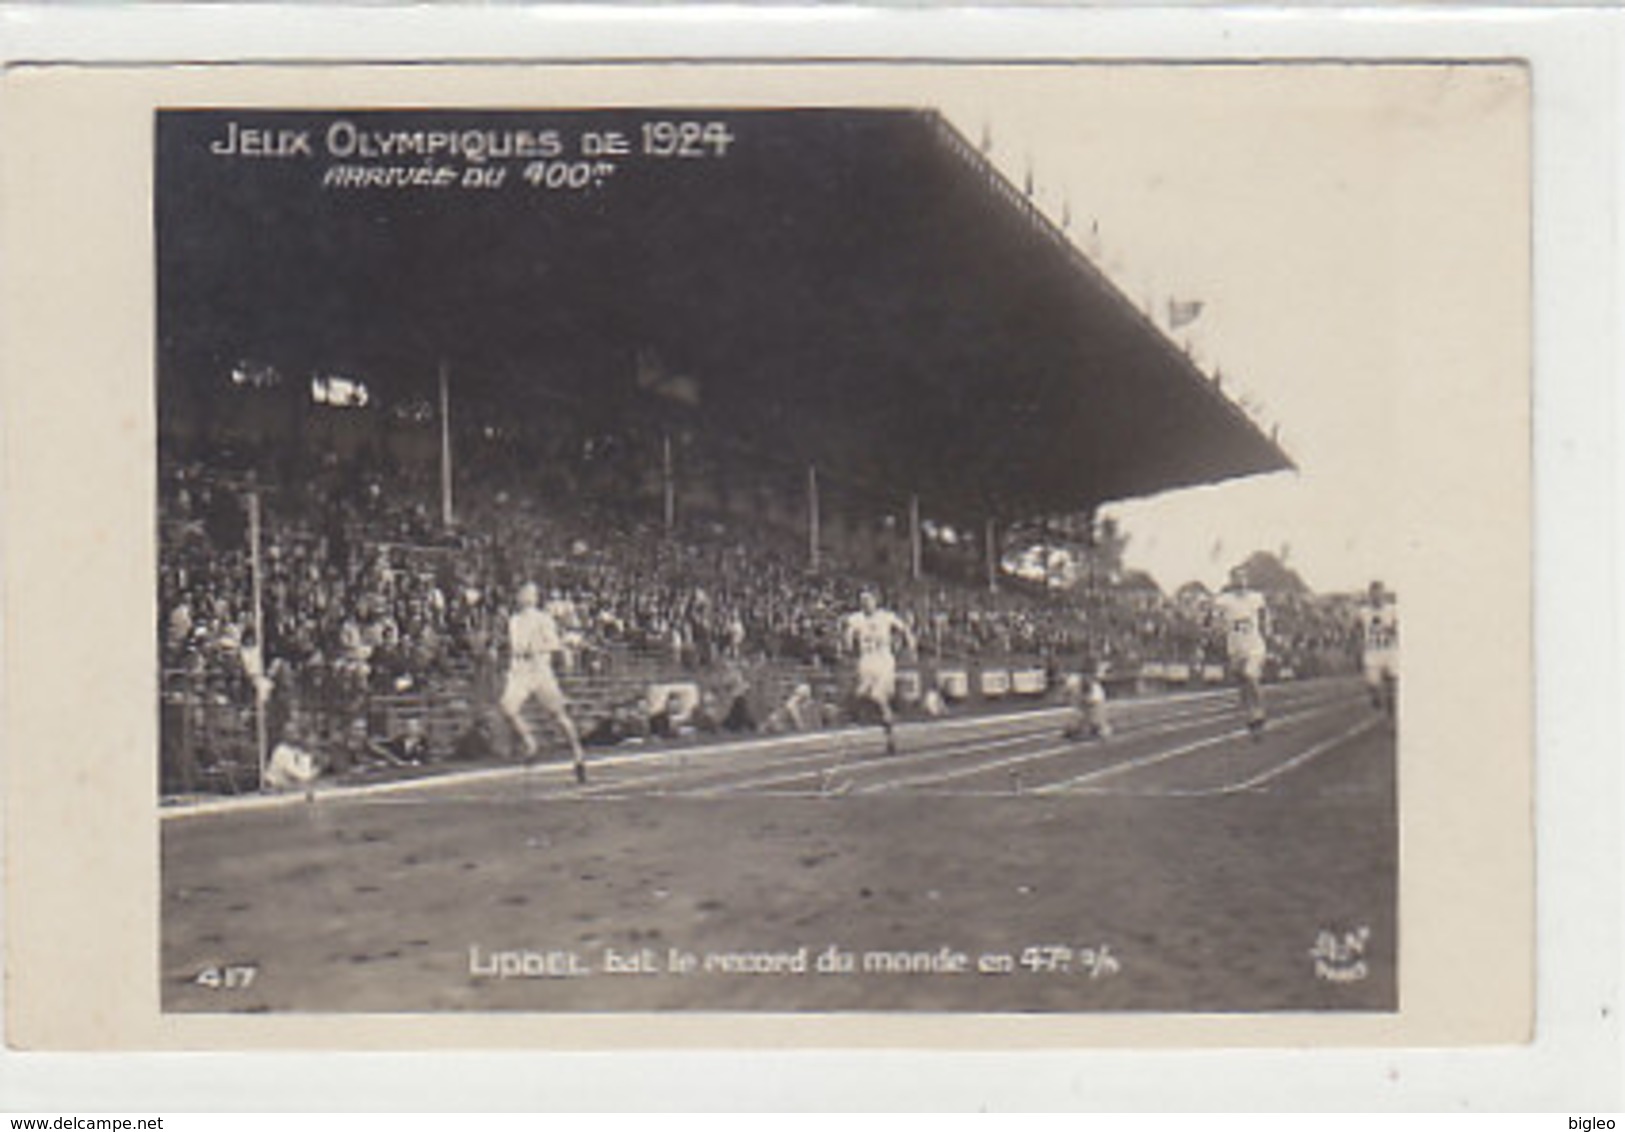 Jeux Olympiques 1924 - Arrivée Du 400m - Liddel Bat Le Record Du Monde - Carte Photo         (A-158-190723-160808))8)) - Jeux Olympiques